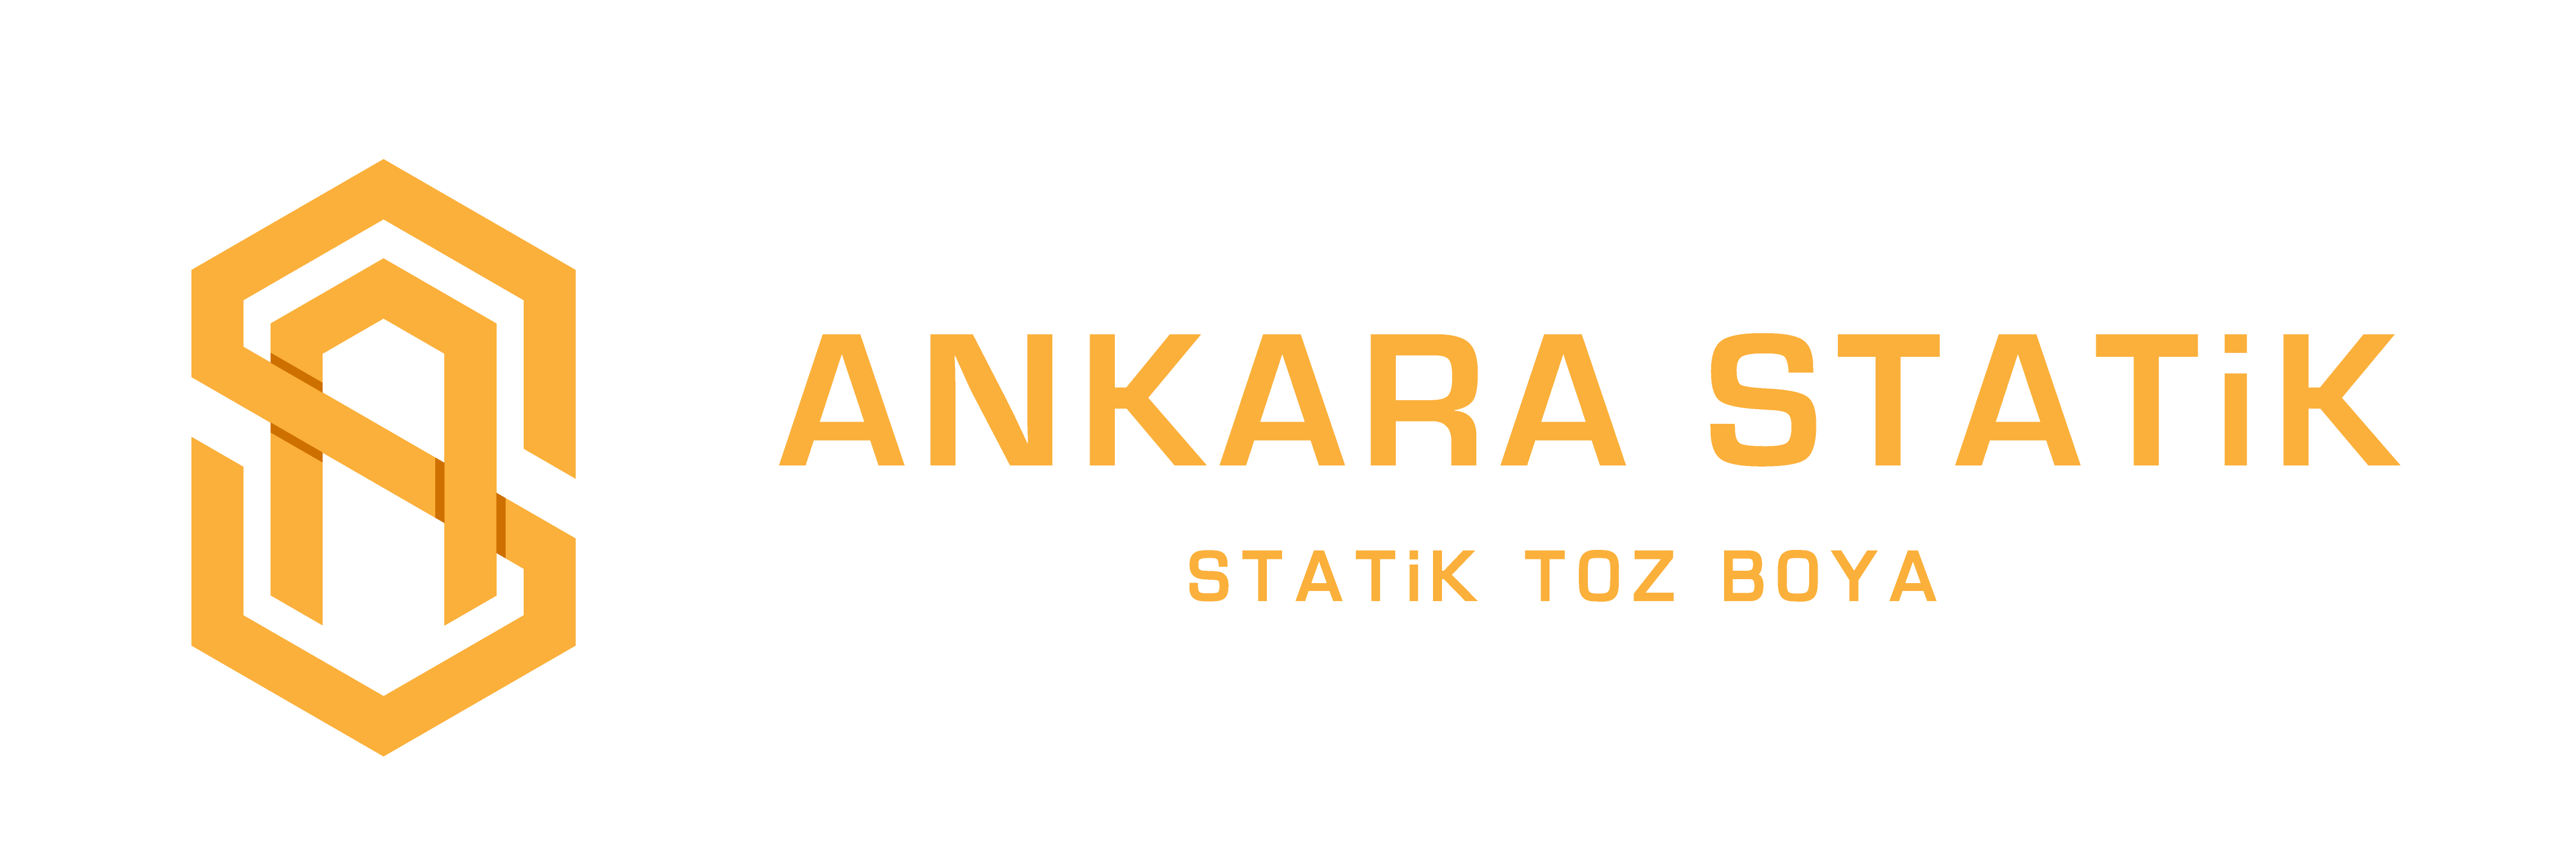 Ankara Statik